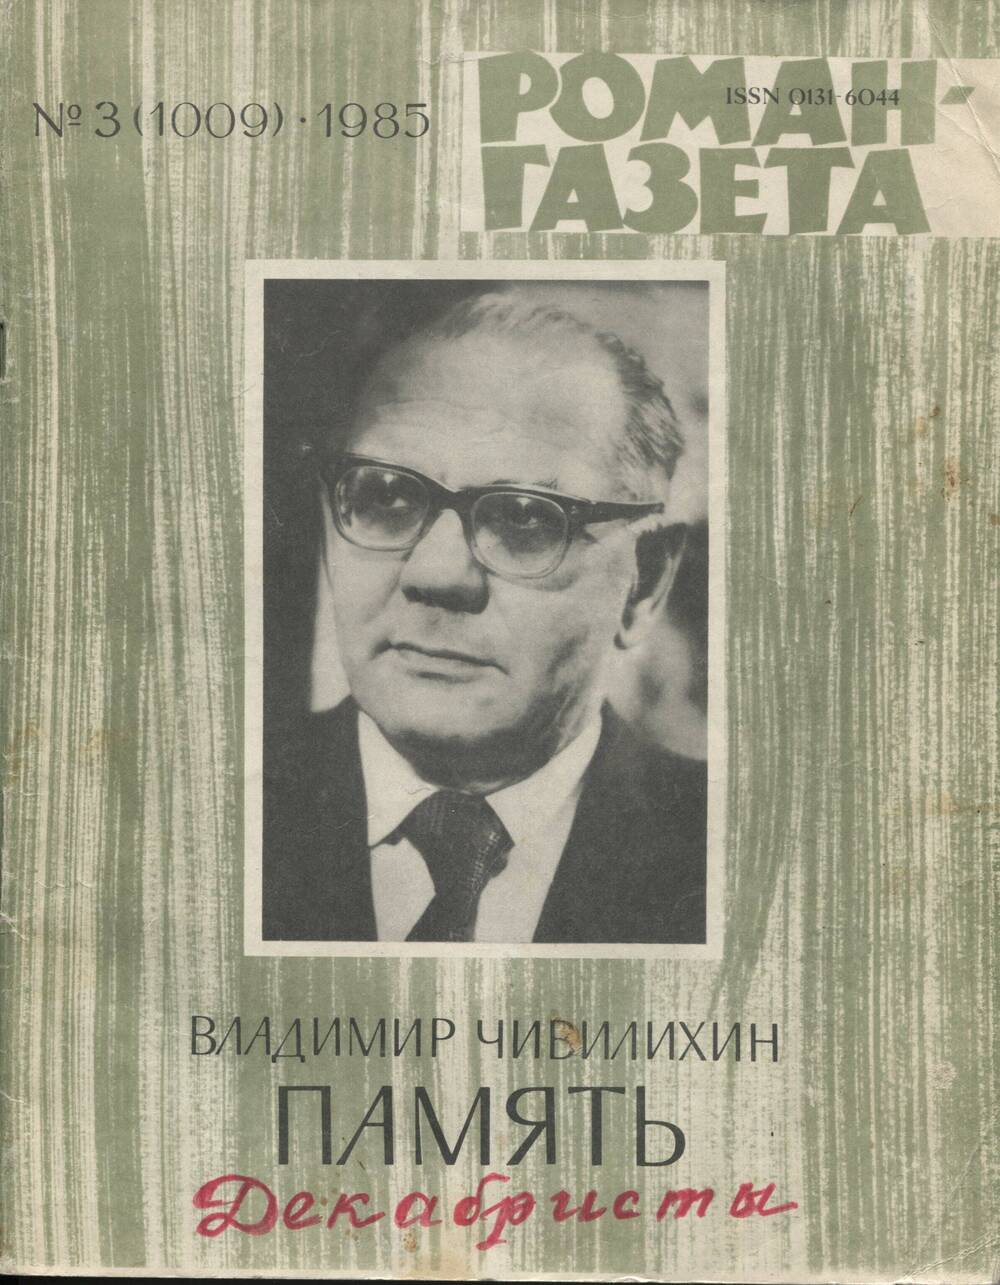 В.А.Чивилихин. Память. Роман-эссе. Роман-газета, №3 1985 г.